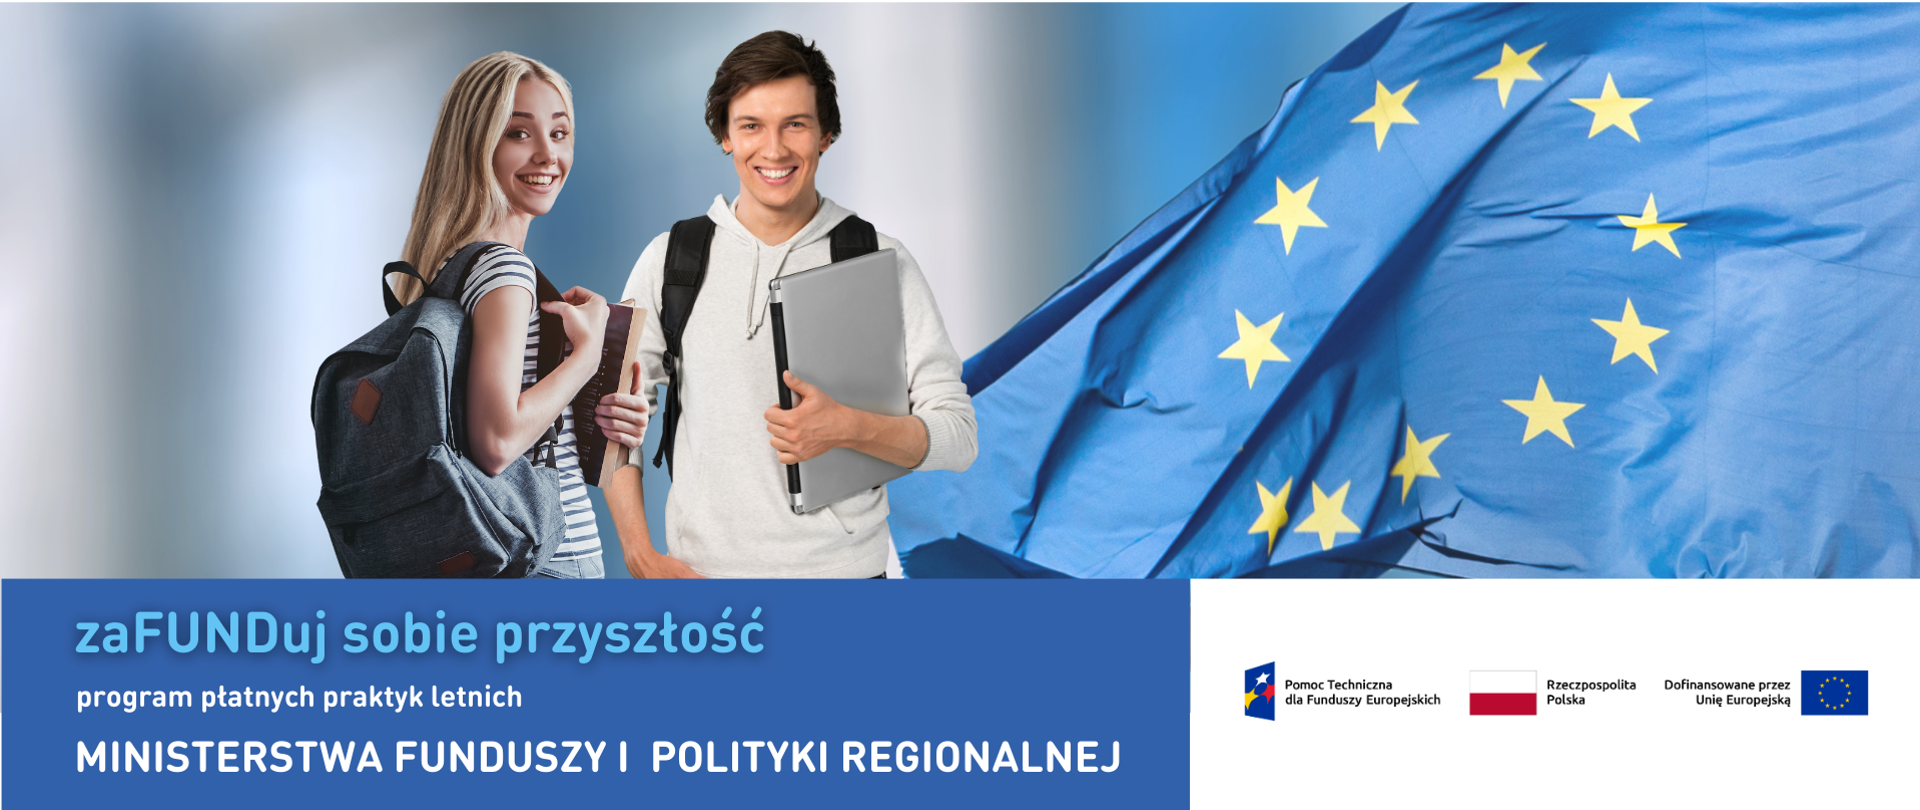 Uśmiechnięci chłopak i dziewczyna stoją na tle unijnej flagi. Pod zdjęciem napis: Zafunduj sobie przyszłość, program płatnych praktyk letnich Ministerstwa Funduszy i Polityki Regionalnej. Obok logo programy Pomoc Techniczna dla Funduszy Europejskich, flaga Polski i UE.